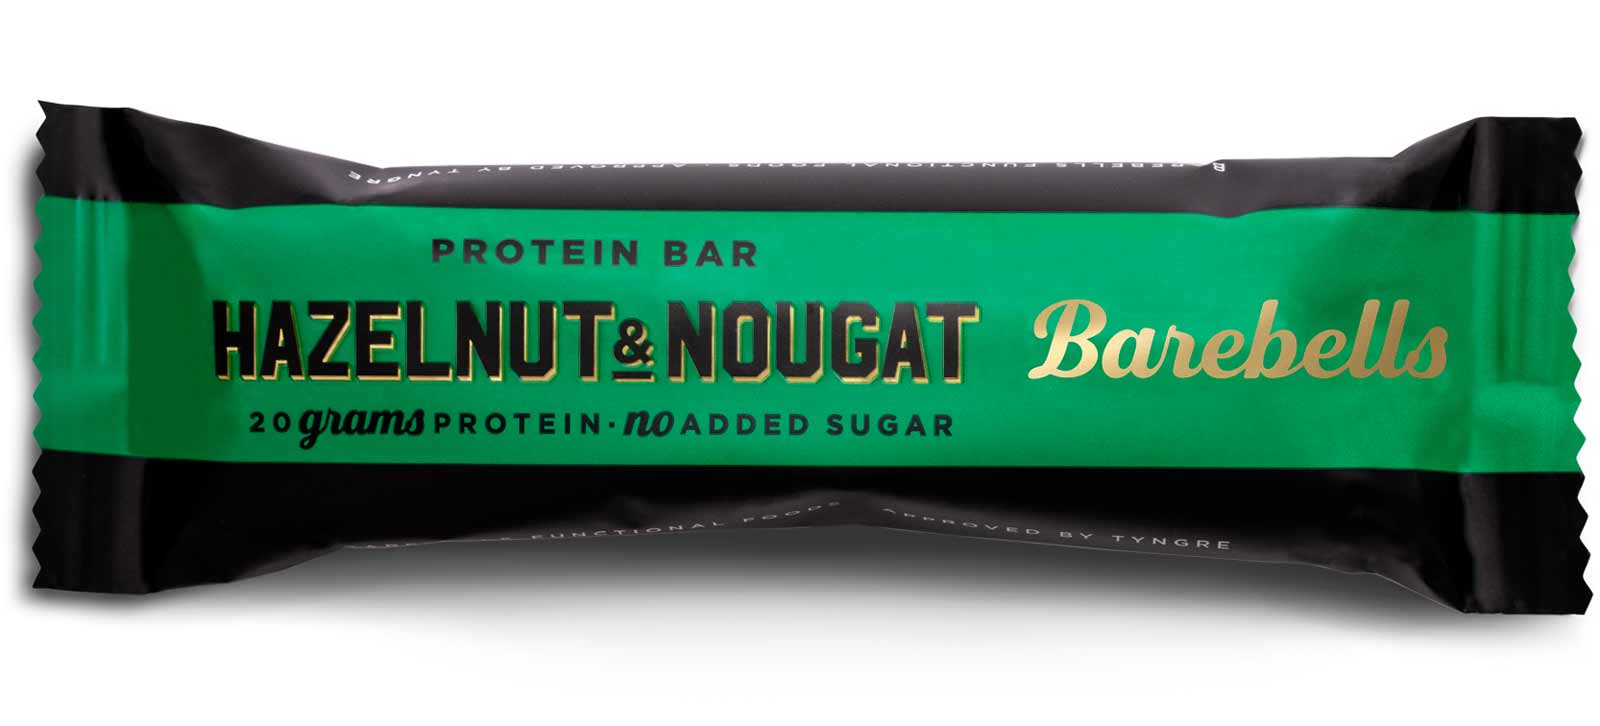 Barebells Hazelnut & Nougat : un goût fort